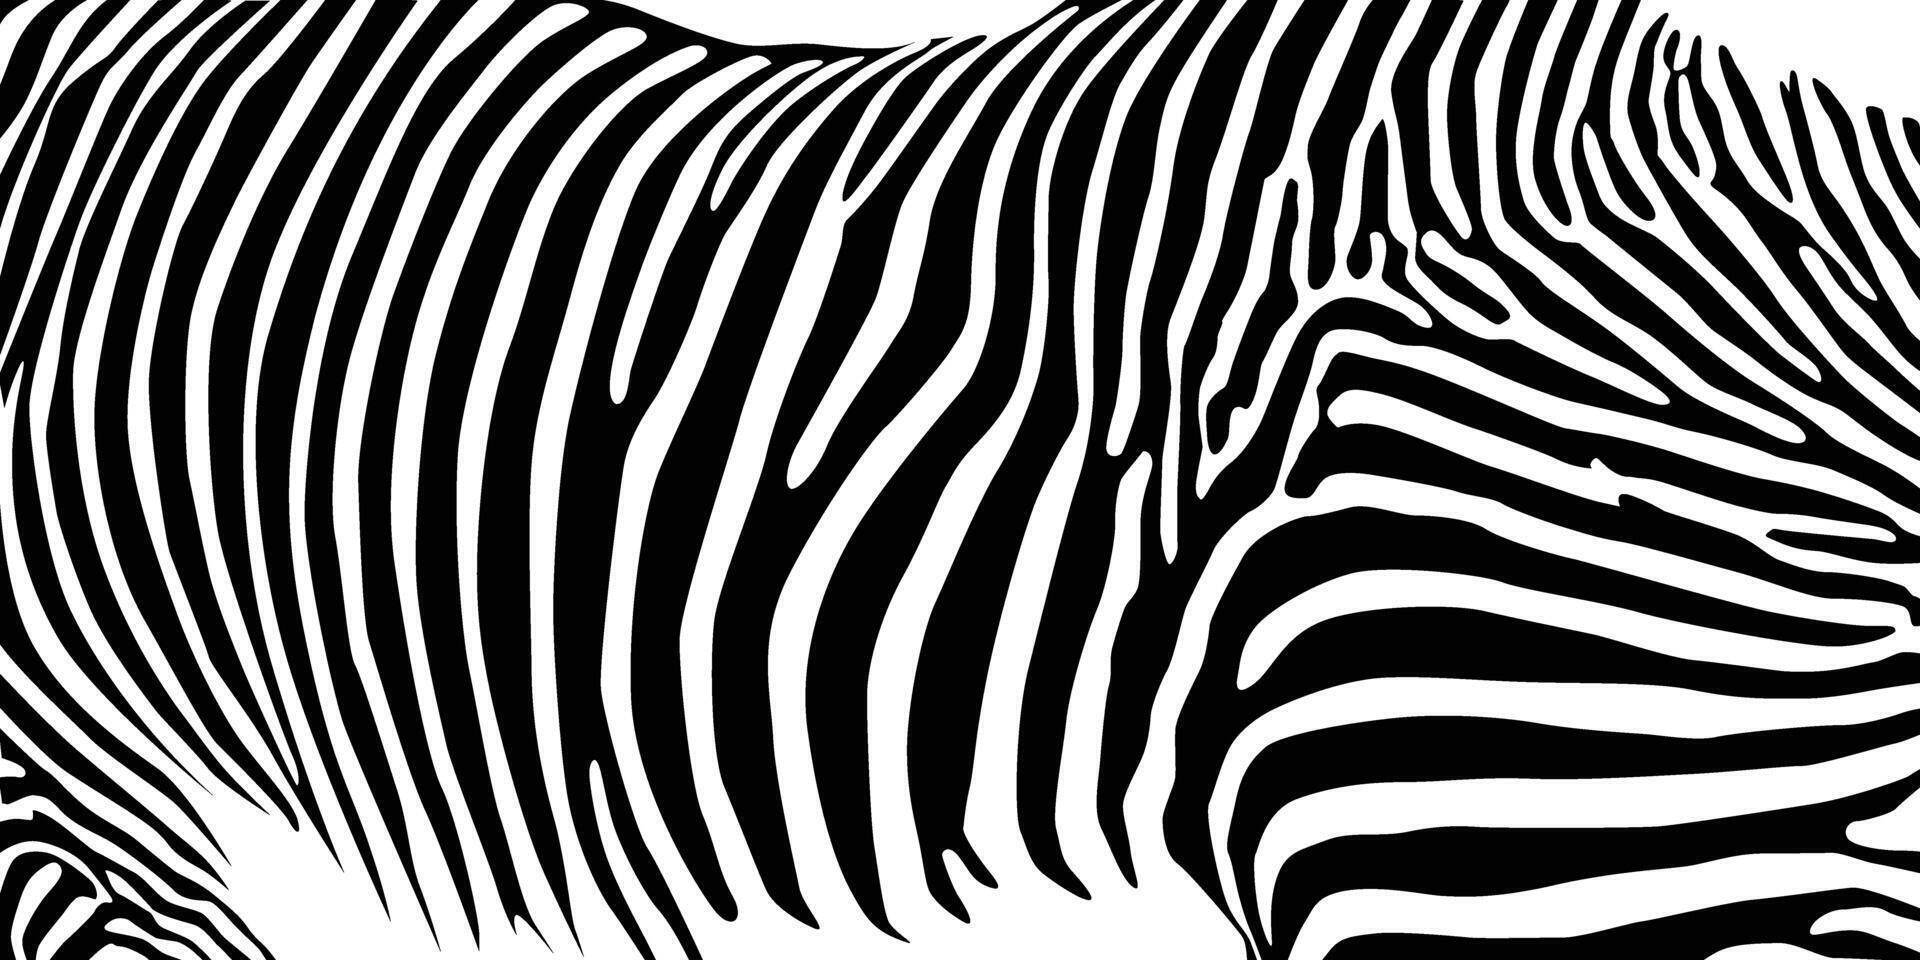 zebra patroon vorm vector illustratie voor achtergrond ontwerp.